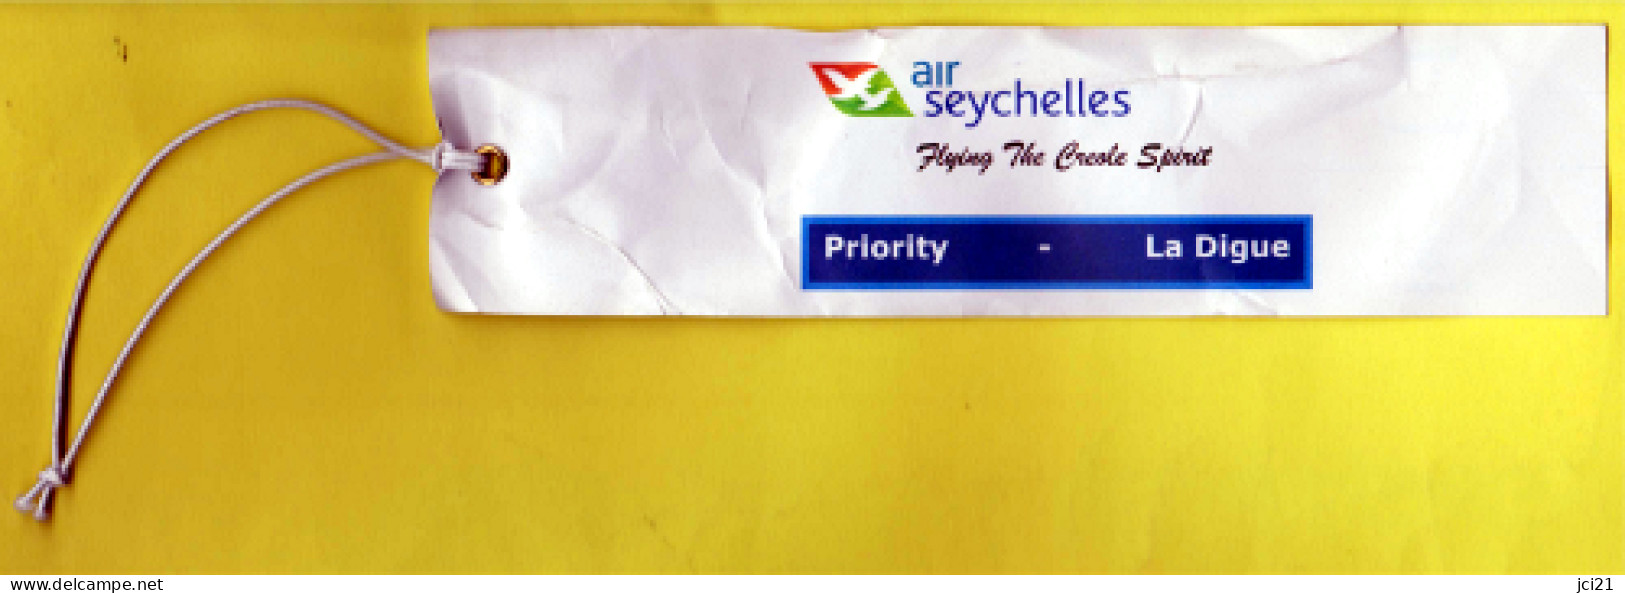 Étiquette Bagage-valise " Air Seychelles " Ile De LA DIGUE_D307 - Étiquettes à Bagages